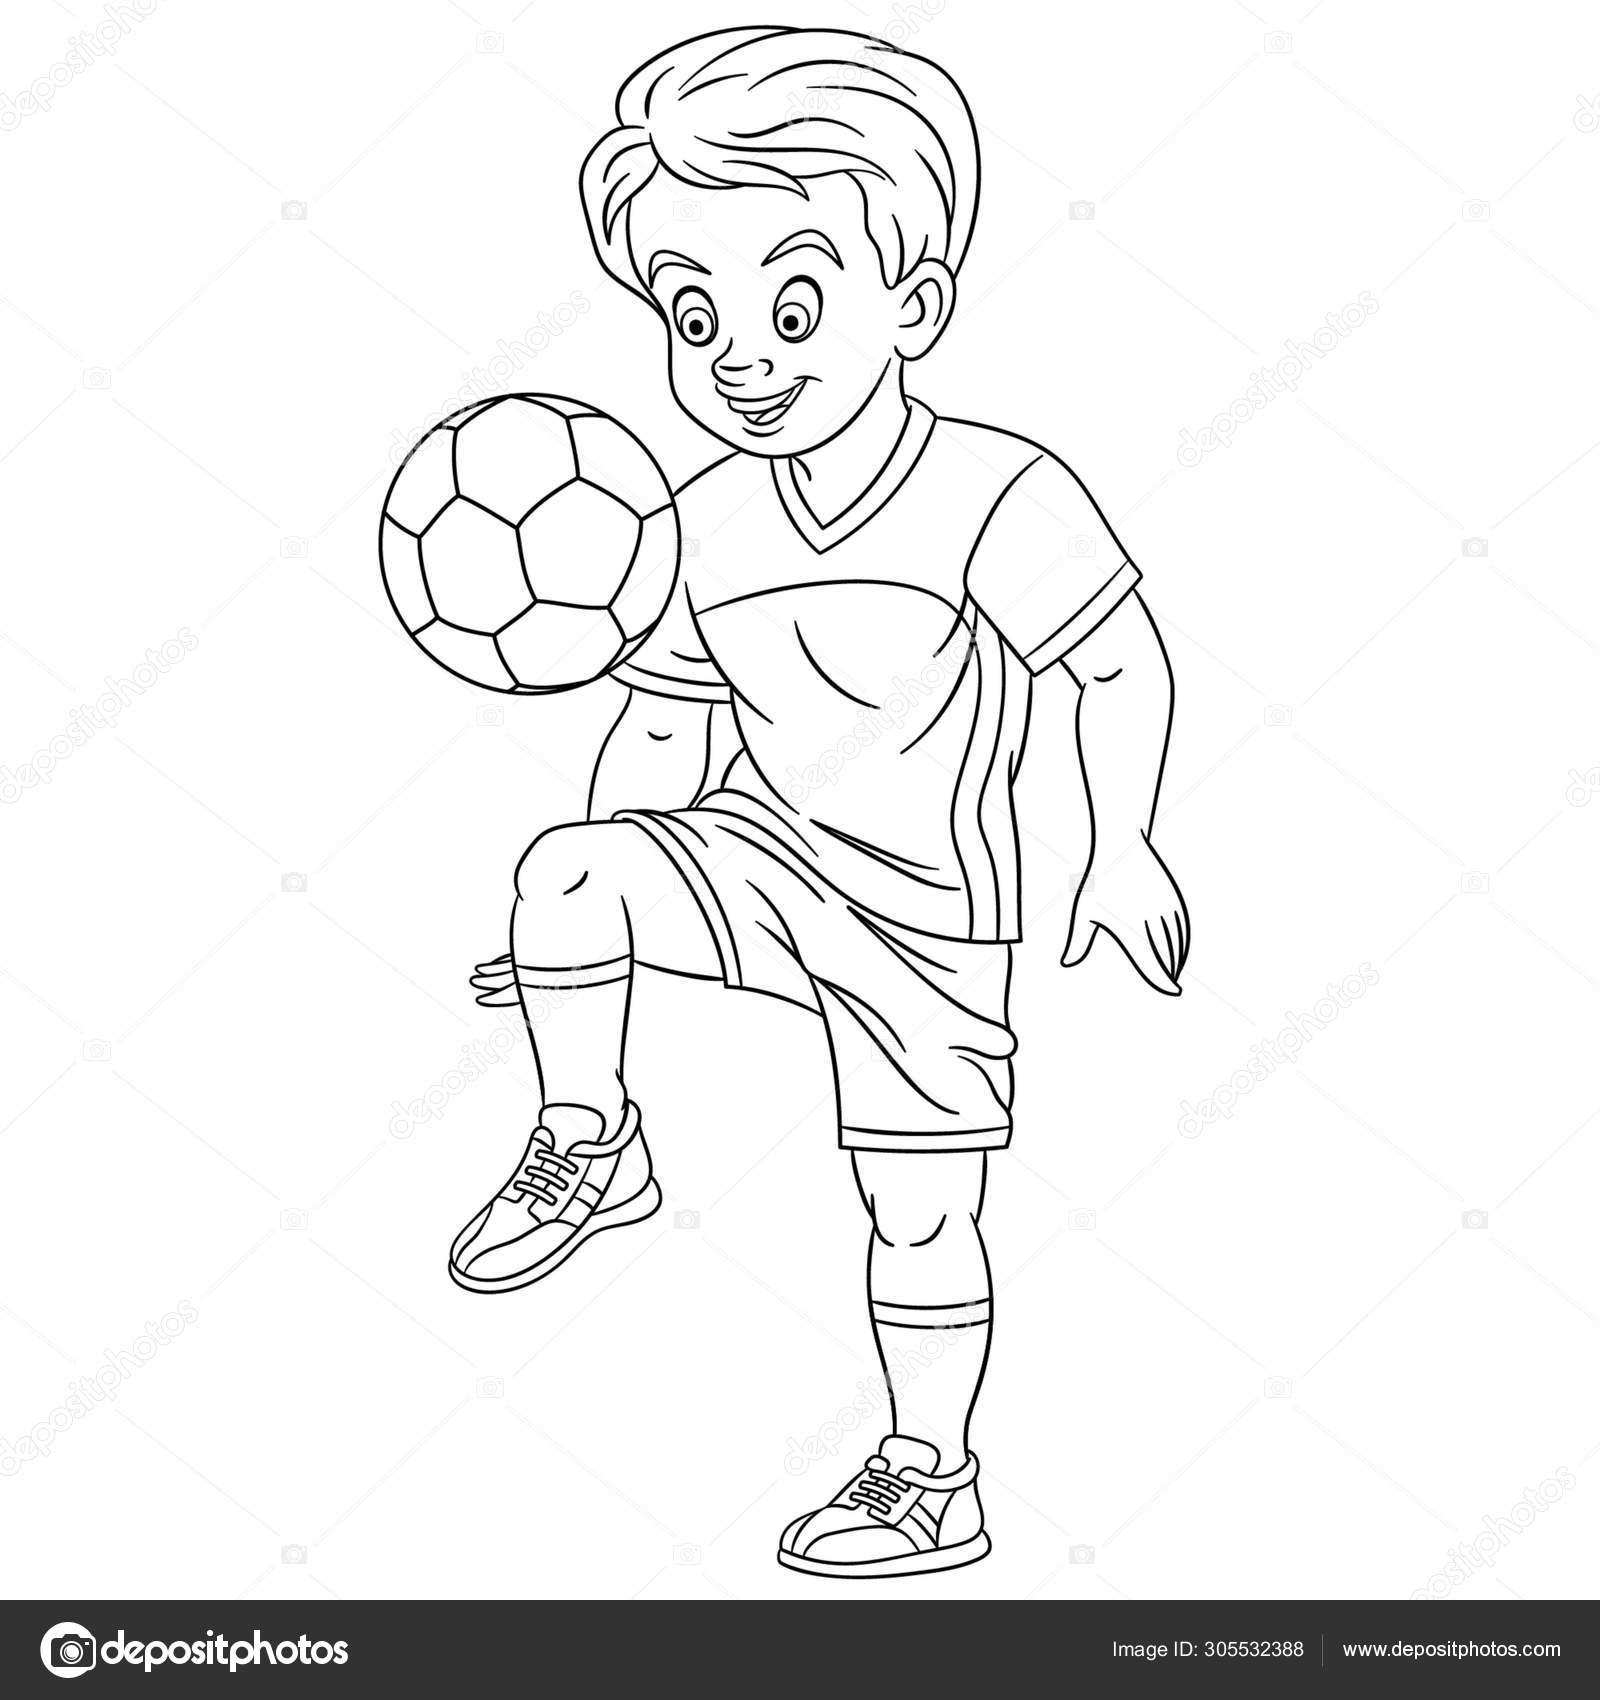 Desenho de Jogar futebol para Colorir - Colorir.com